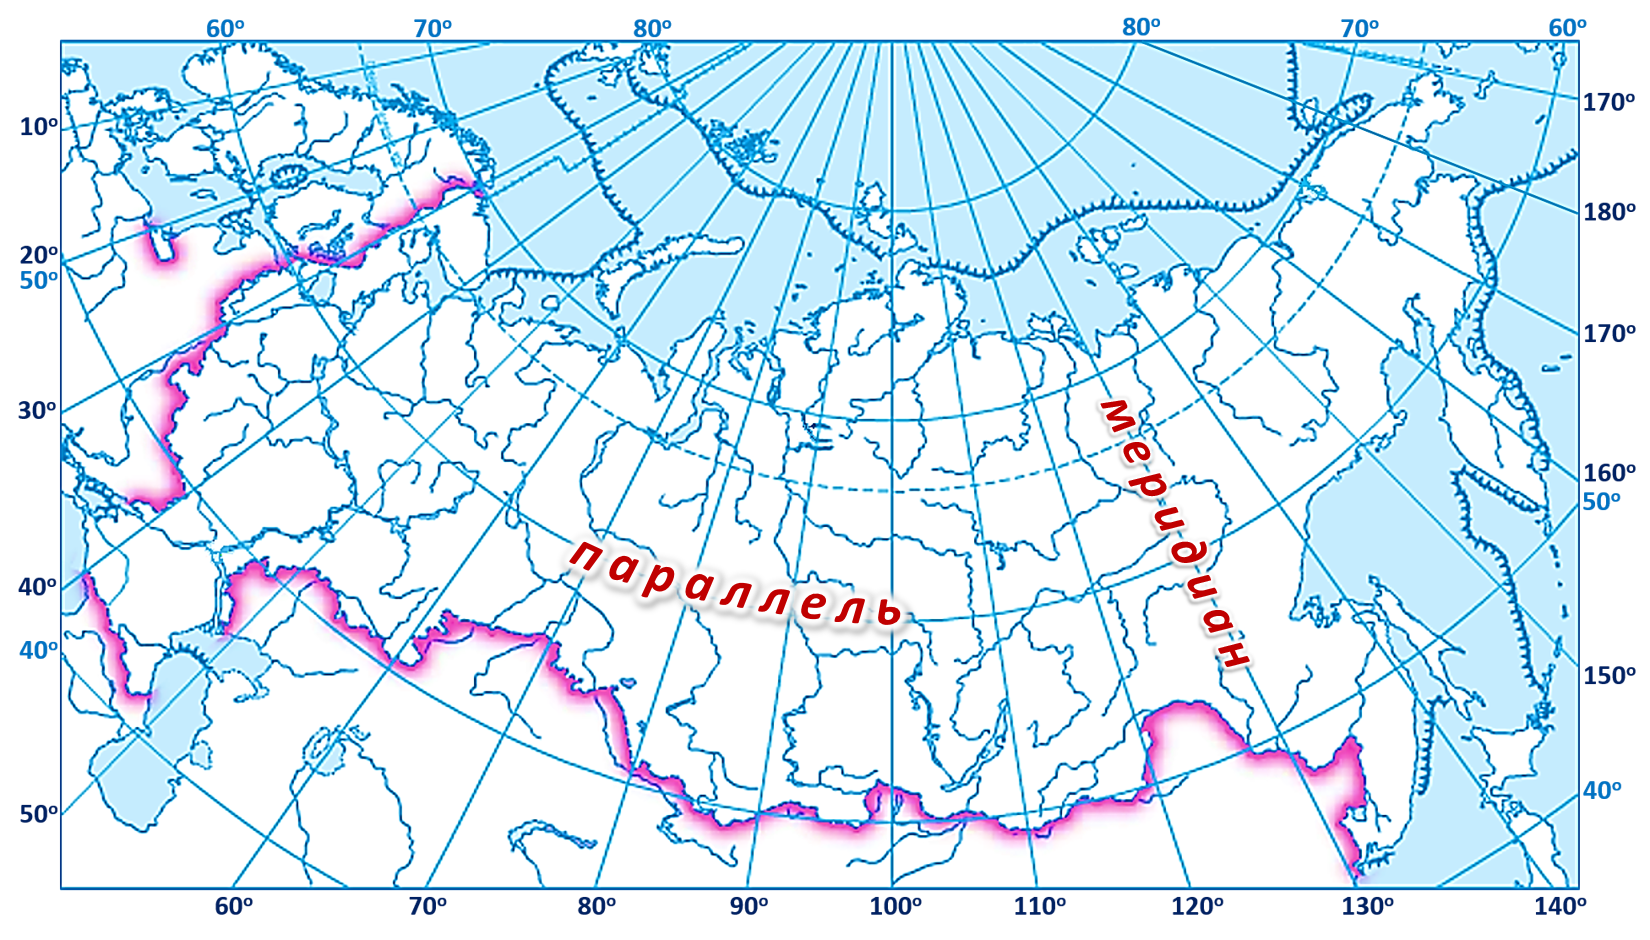 Восточный меридиан на карте. 60 Параллель 60 Меридиан на карте. Карта России с градусной сетью. Карта России с широтой и долготой и городами. Широта 60 градусов на карте России.